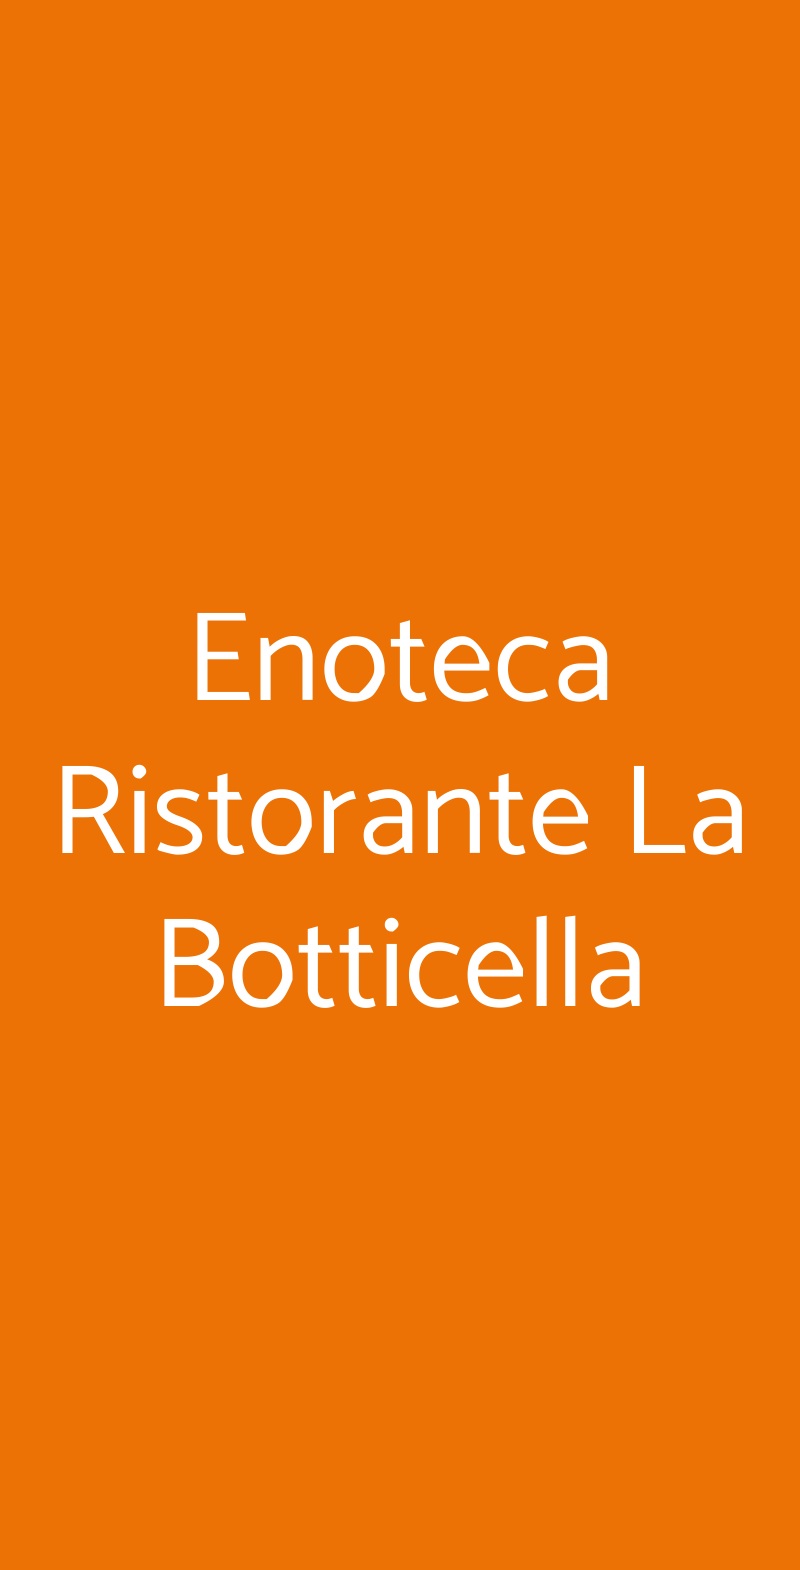 Enoteca Ristorante La Botticella Sestri Levante menù 1 pagina